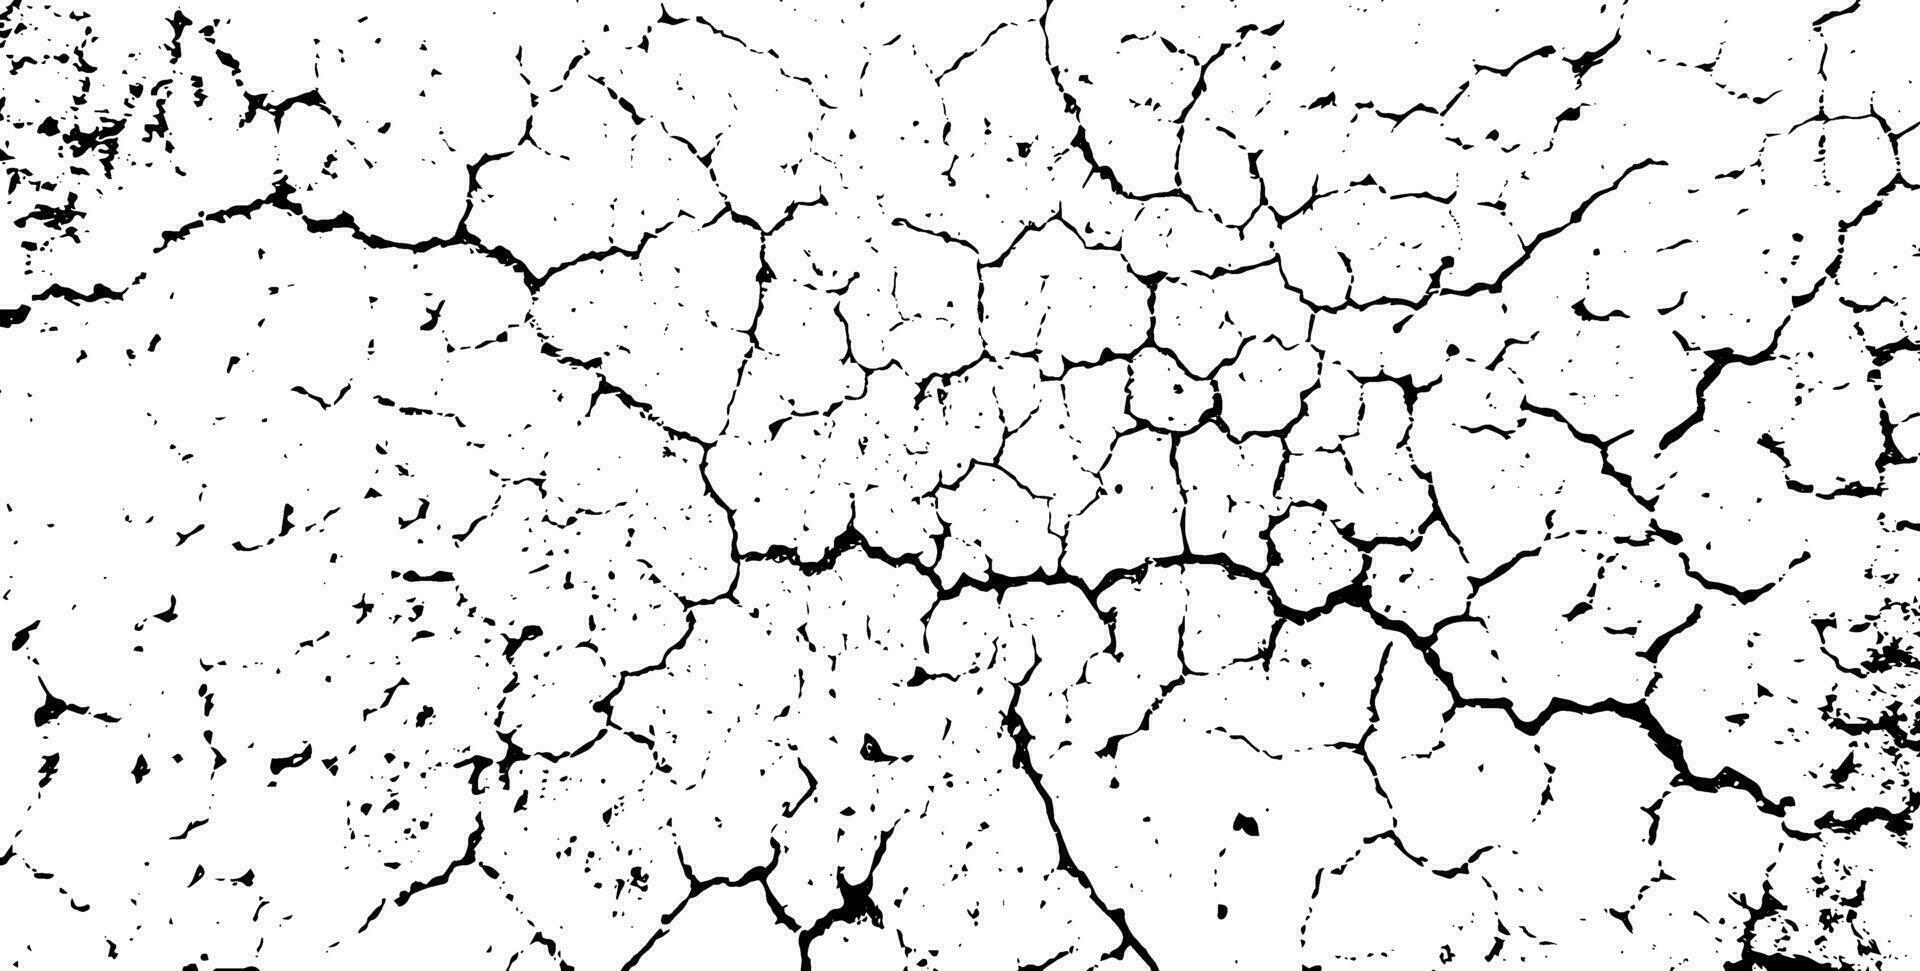 en svart och vit bild av en knäckt vägg knäckt knäckt textur bakgrund, textur spricka textur jord fractured textur sprickor lera kalksten betong textur lera torkades dammig textur spraka vektor